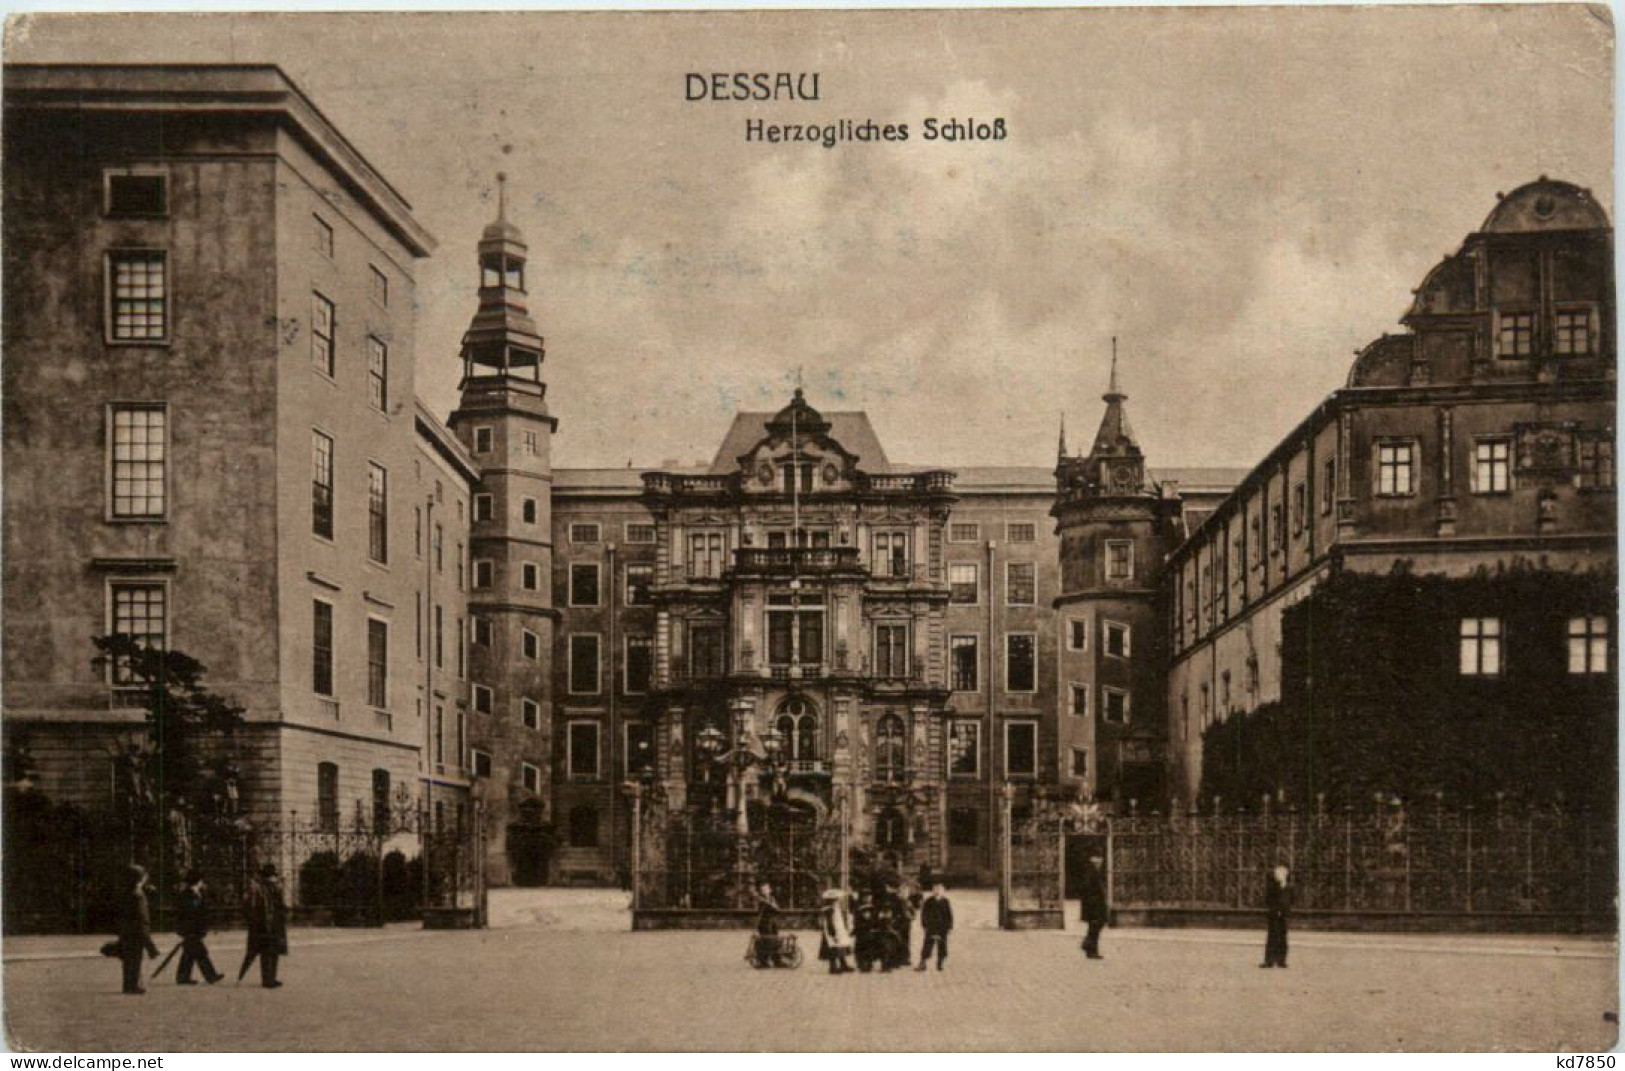 Dessau, Herzogliches Schloss - Dessau